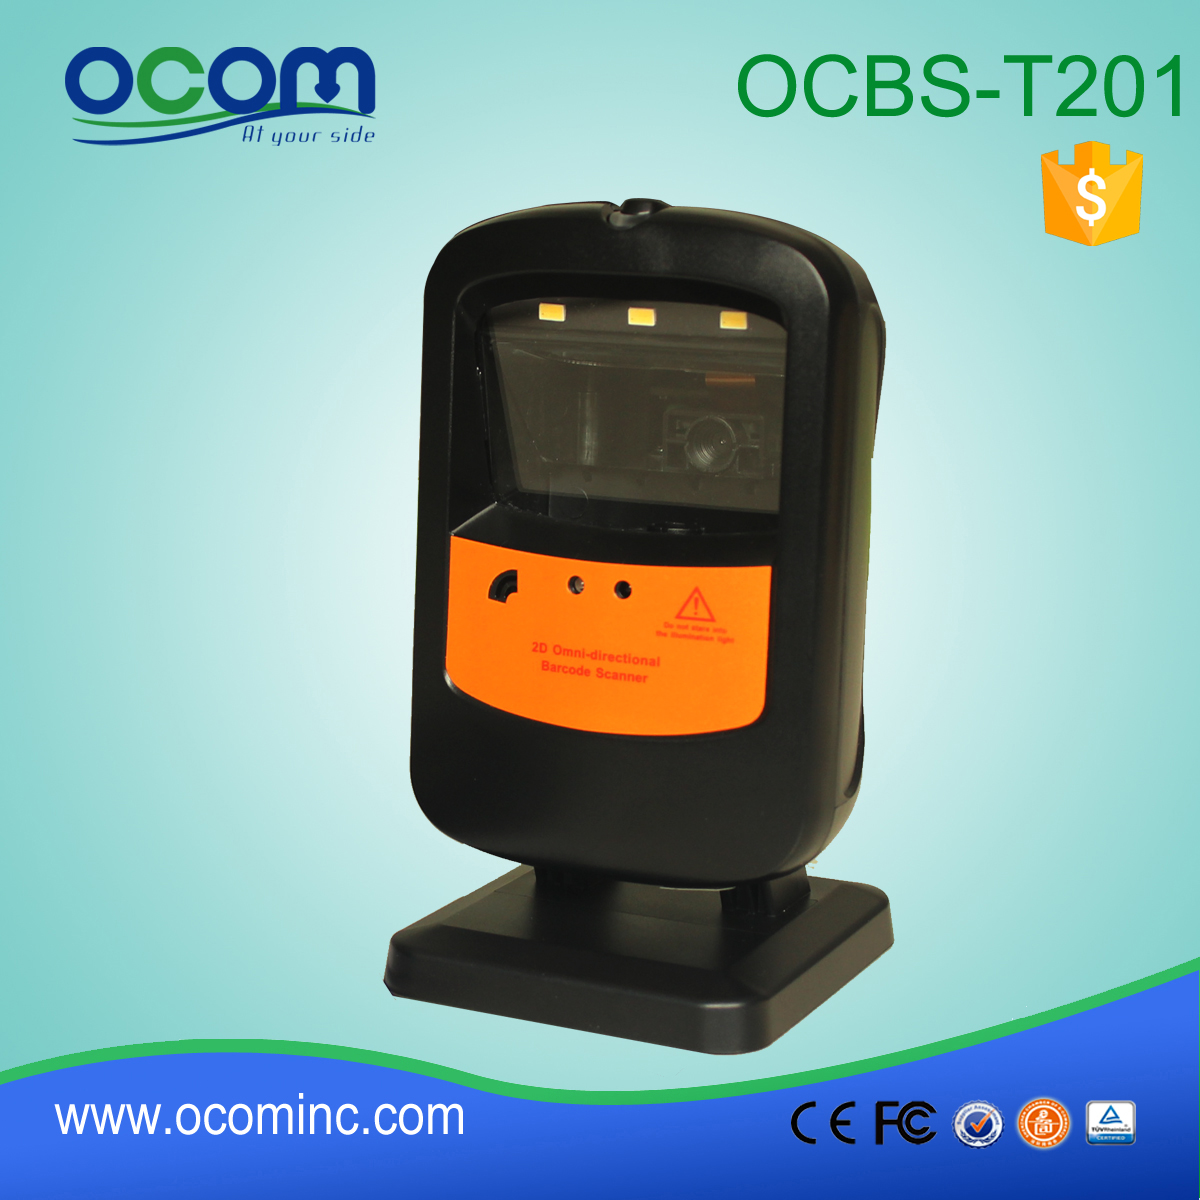 OCBS-T201: tafelblad barcode scanner leverancier, kleine barcodescanner